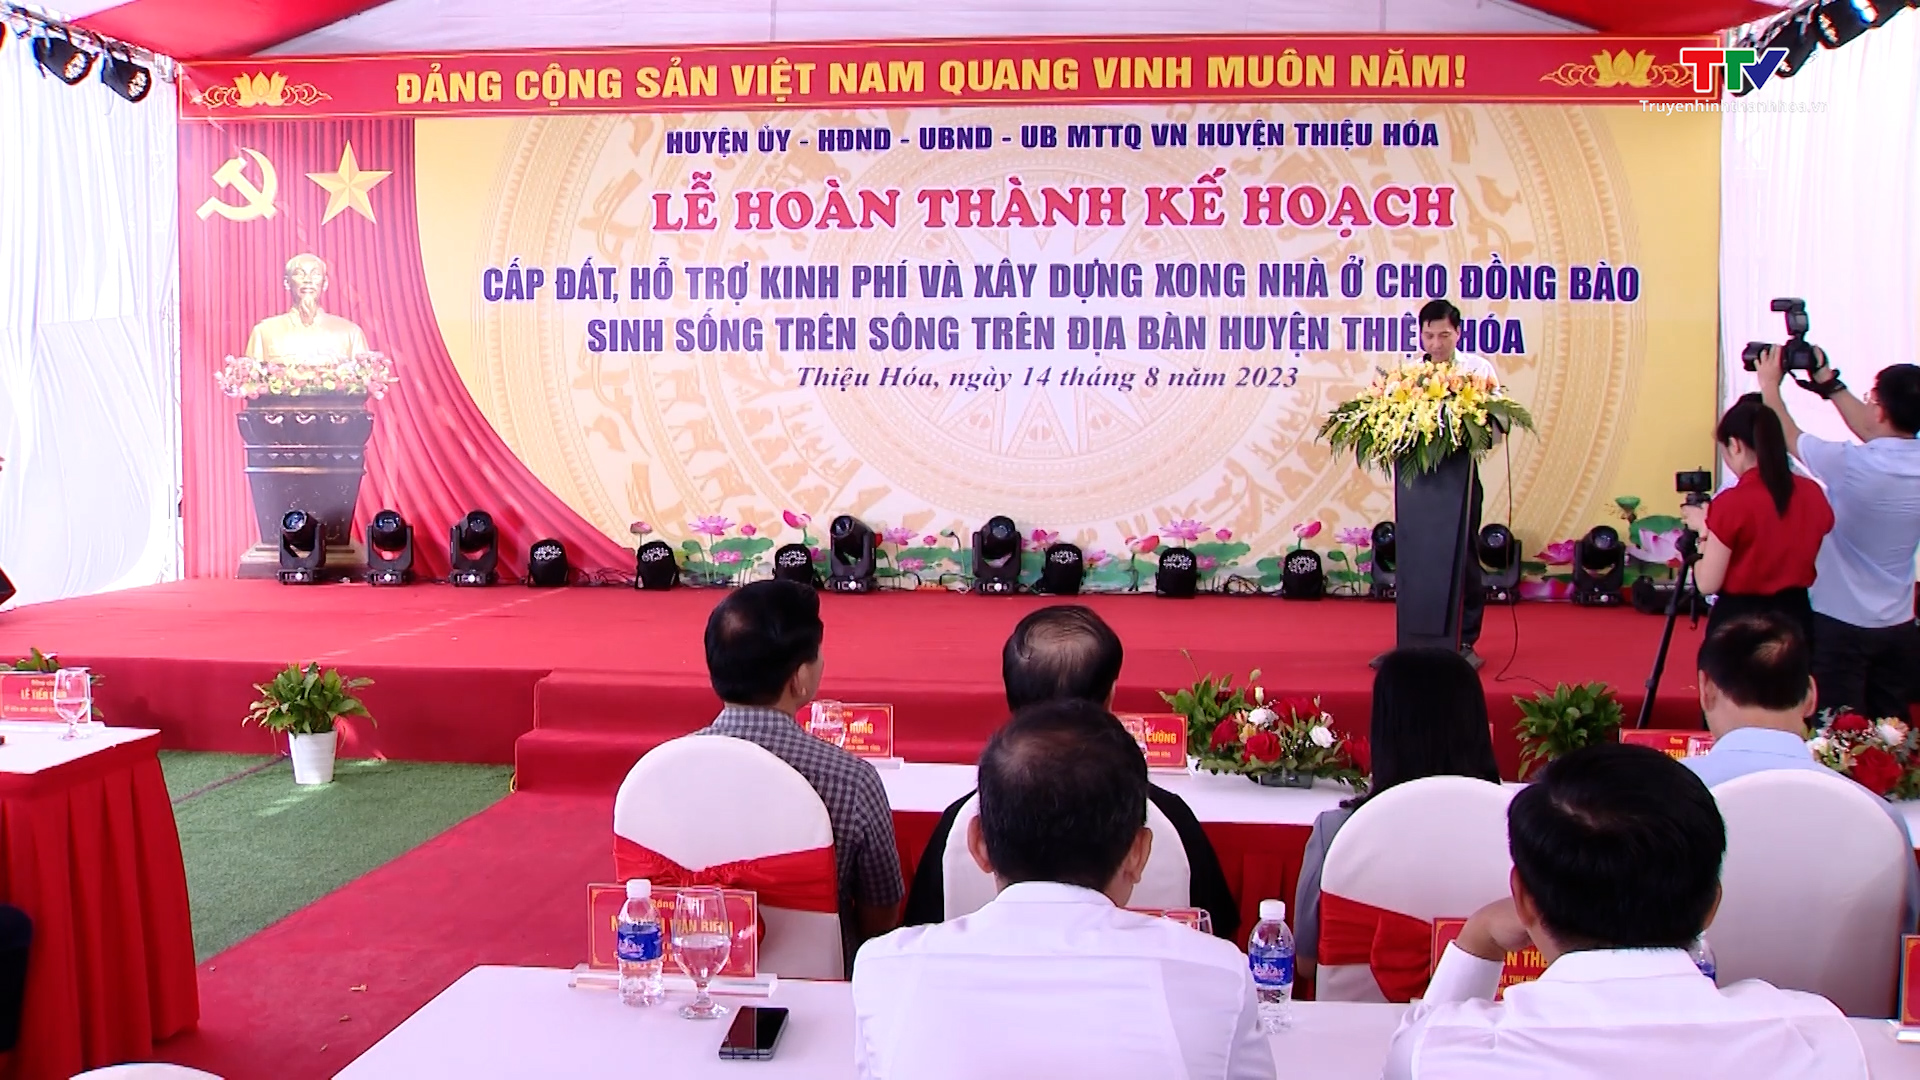 Huyện Thiệu Hóa hoàn thành cấp đất và hỗ trợ làm nhà cho các hộ đồng bào sinh sống trên sông   - Ảnh 4.